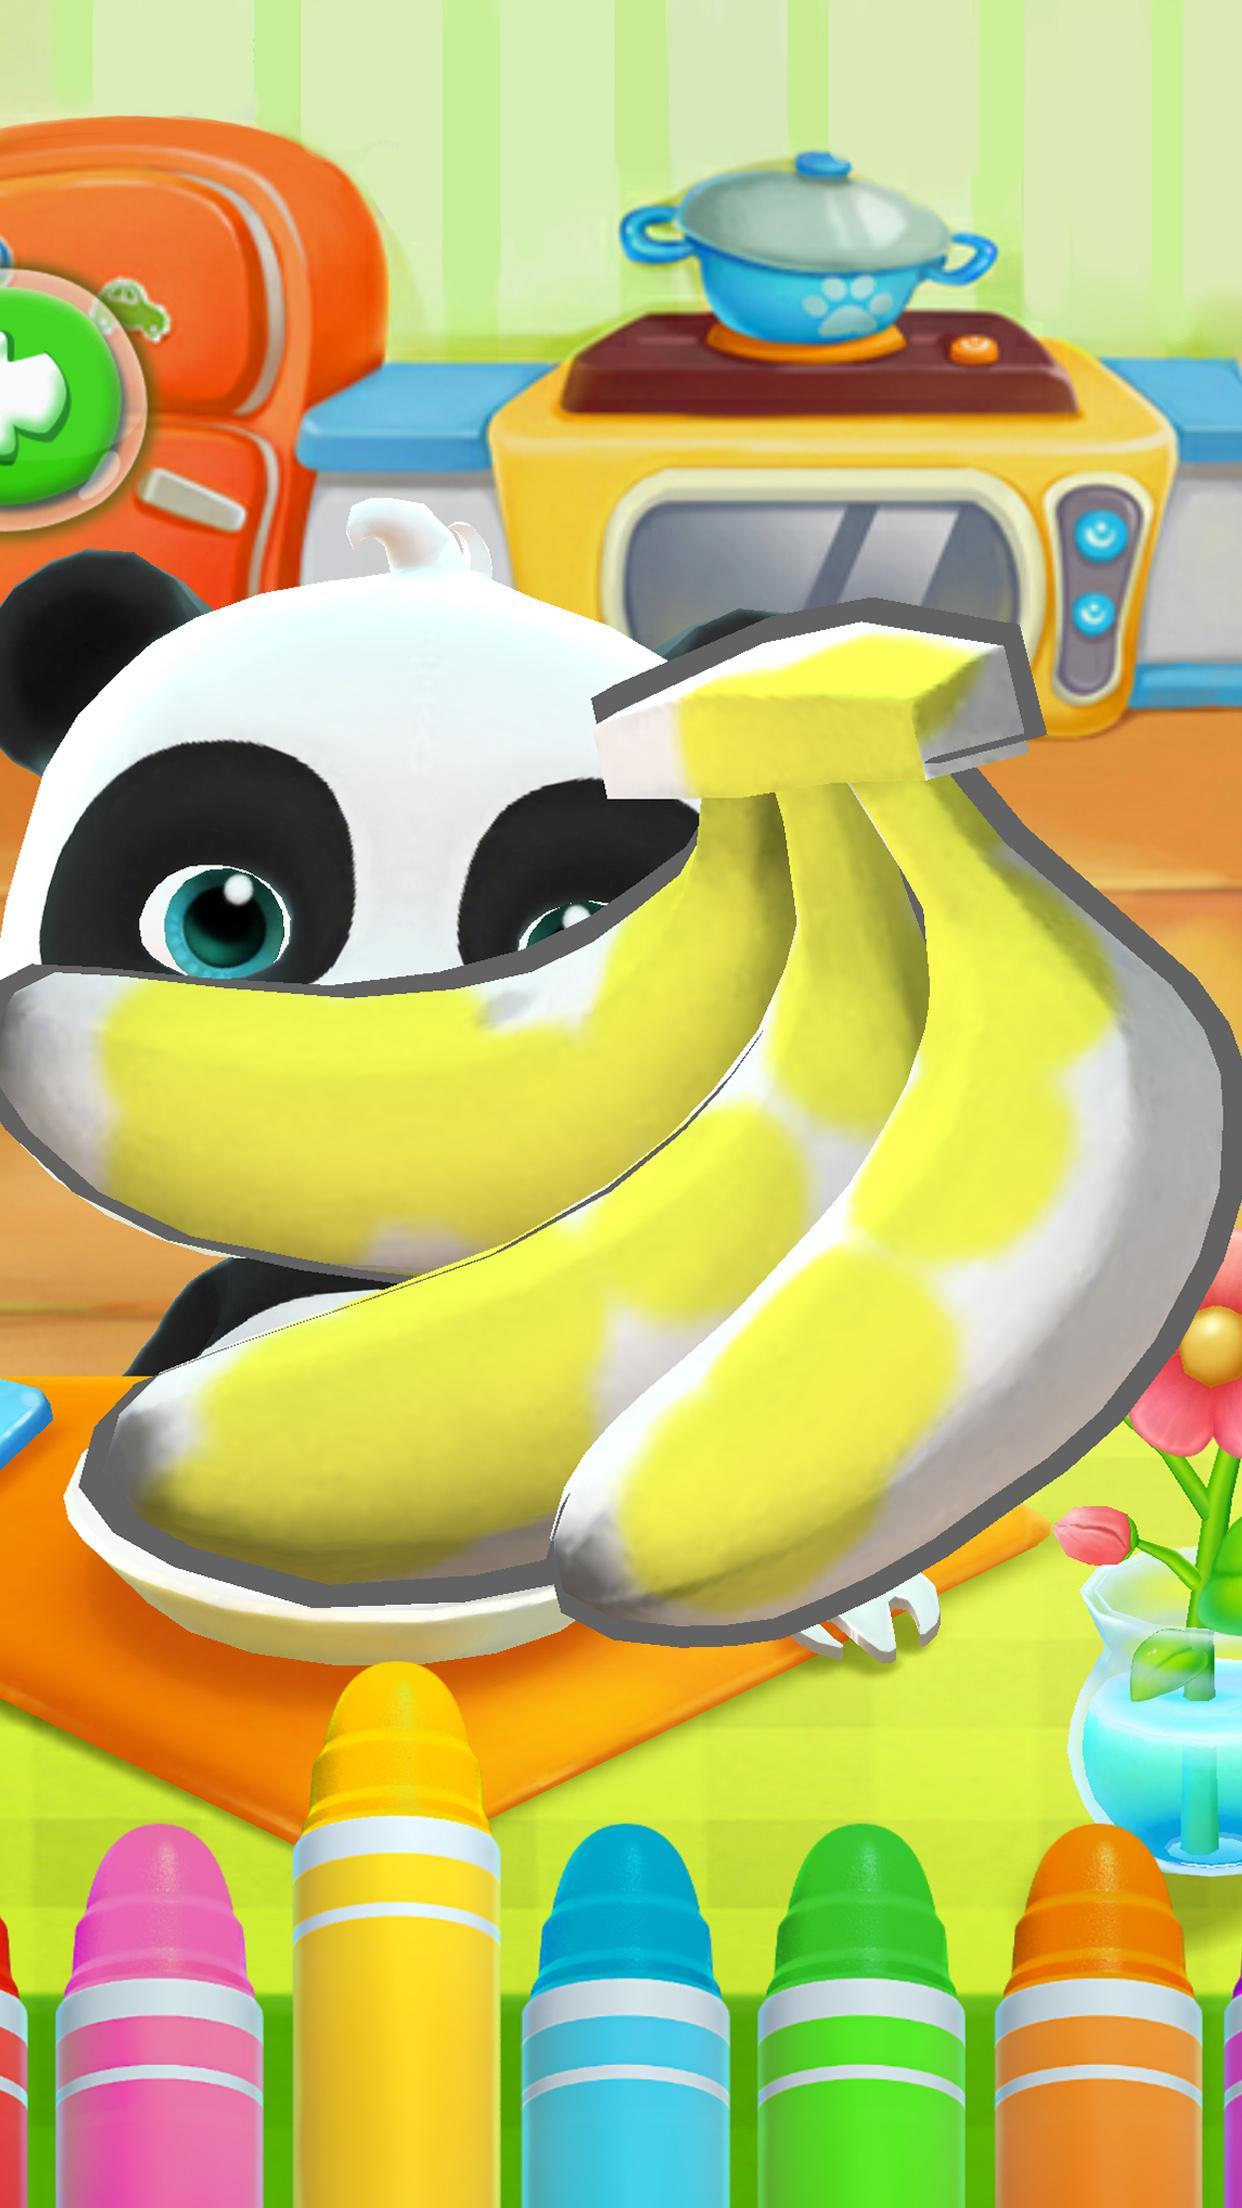 Talking Baby Panda - Kids Game 8.43.00.10 Screenshot 9